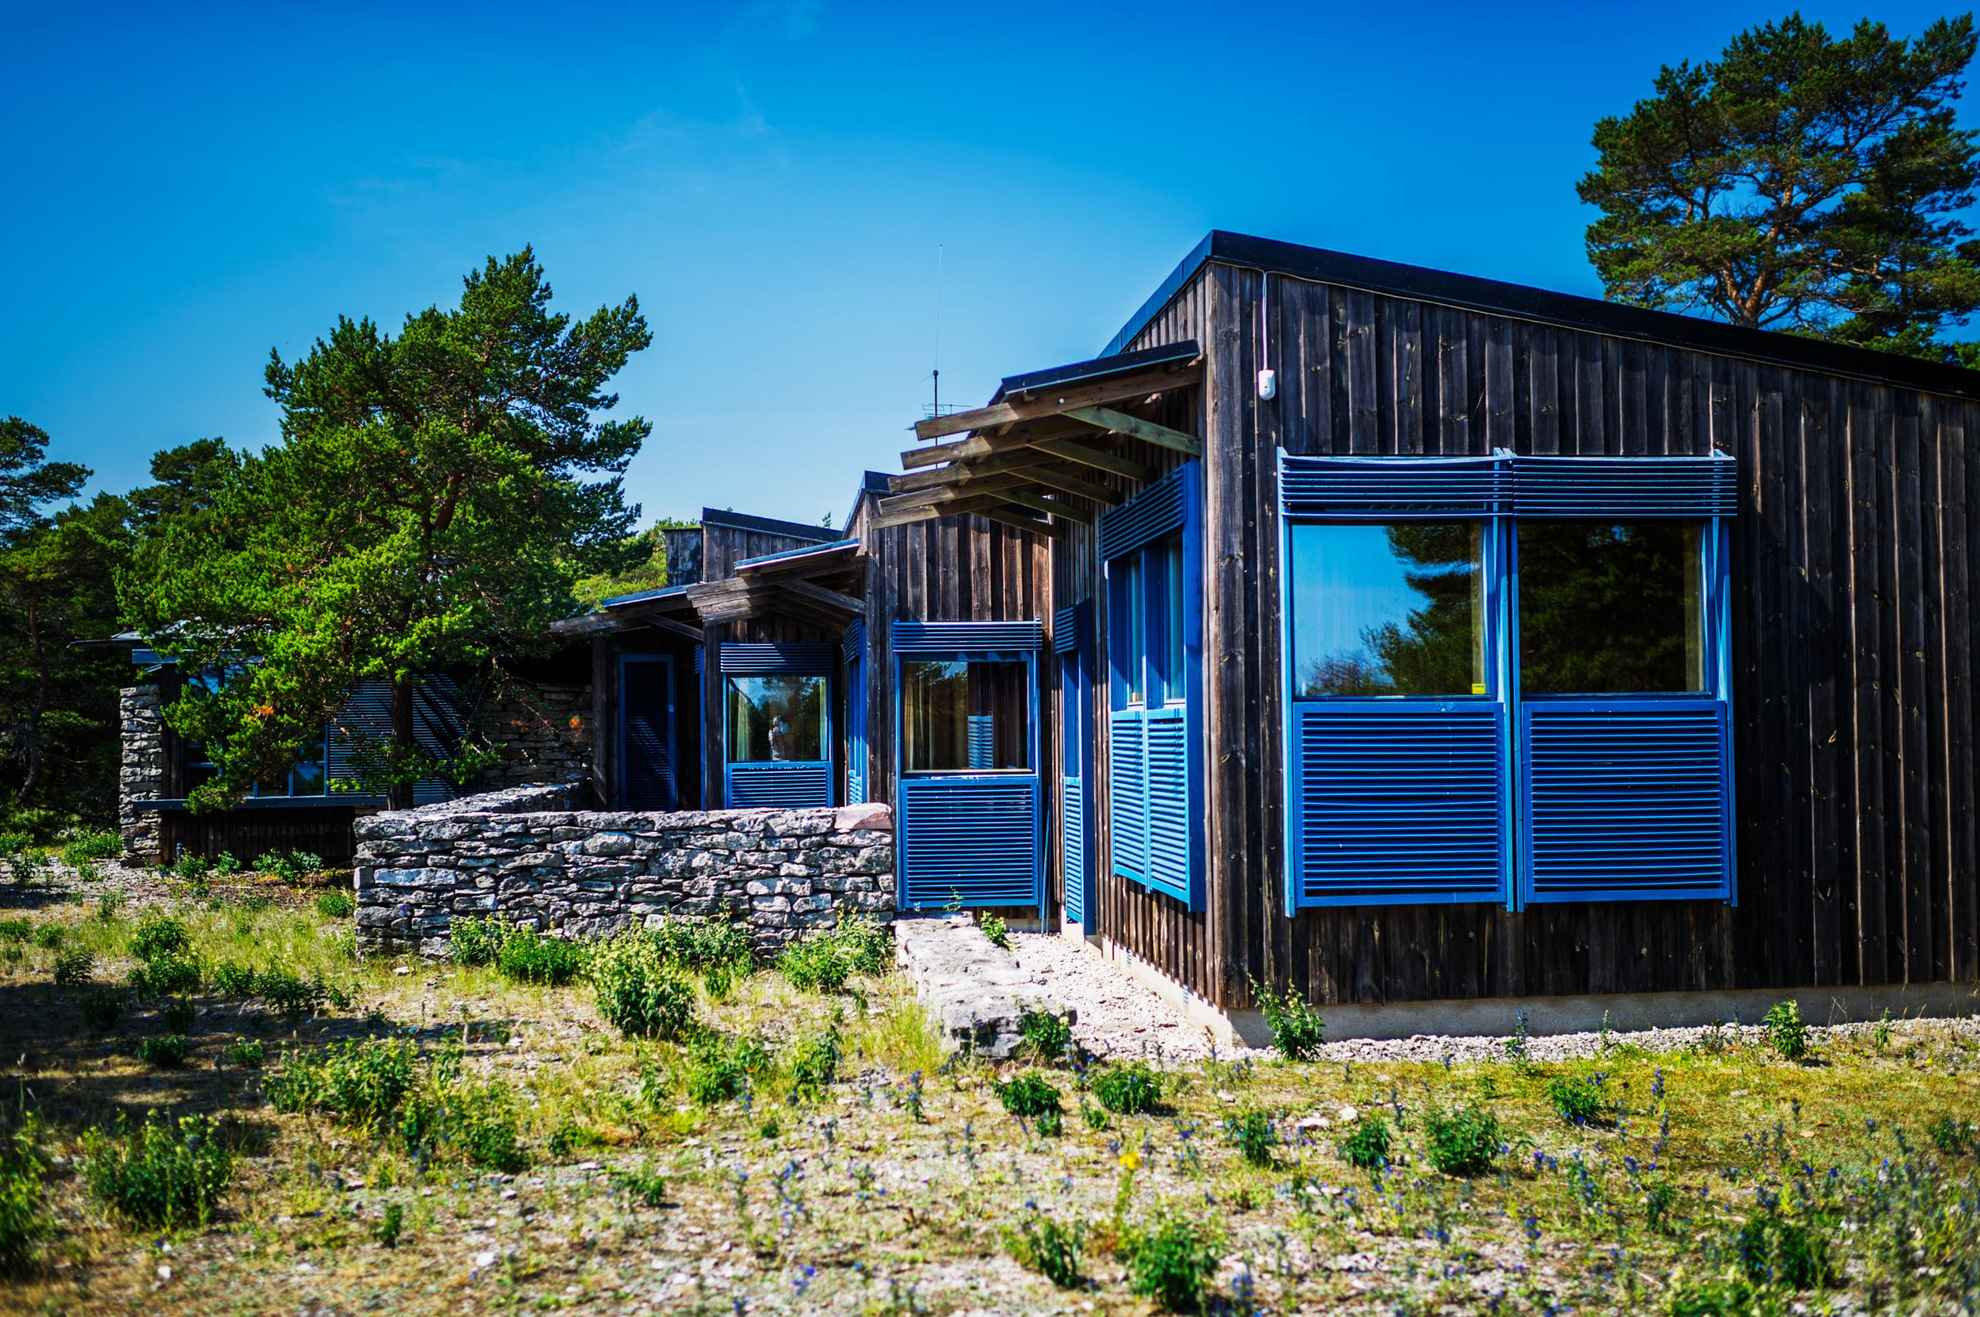 Het huis van Ingmar Bergman, een gebouw van één verdieping met veel ramen en blauwe luiken. Het ligt in een landelijke omgeving.